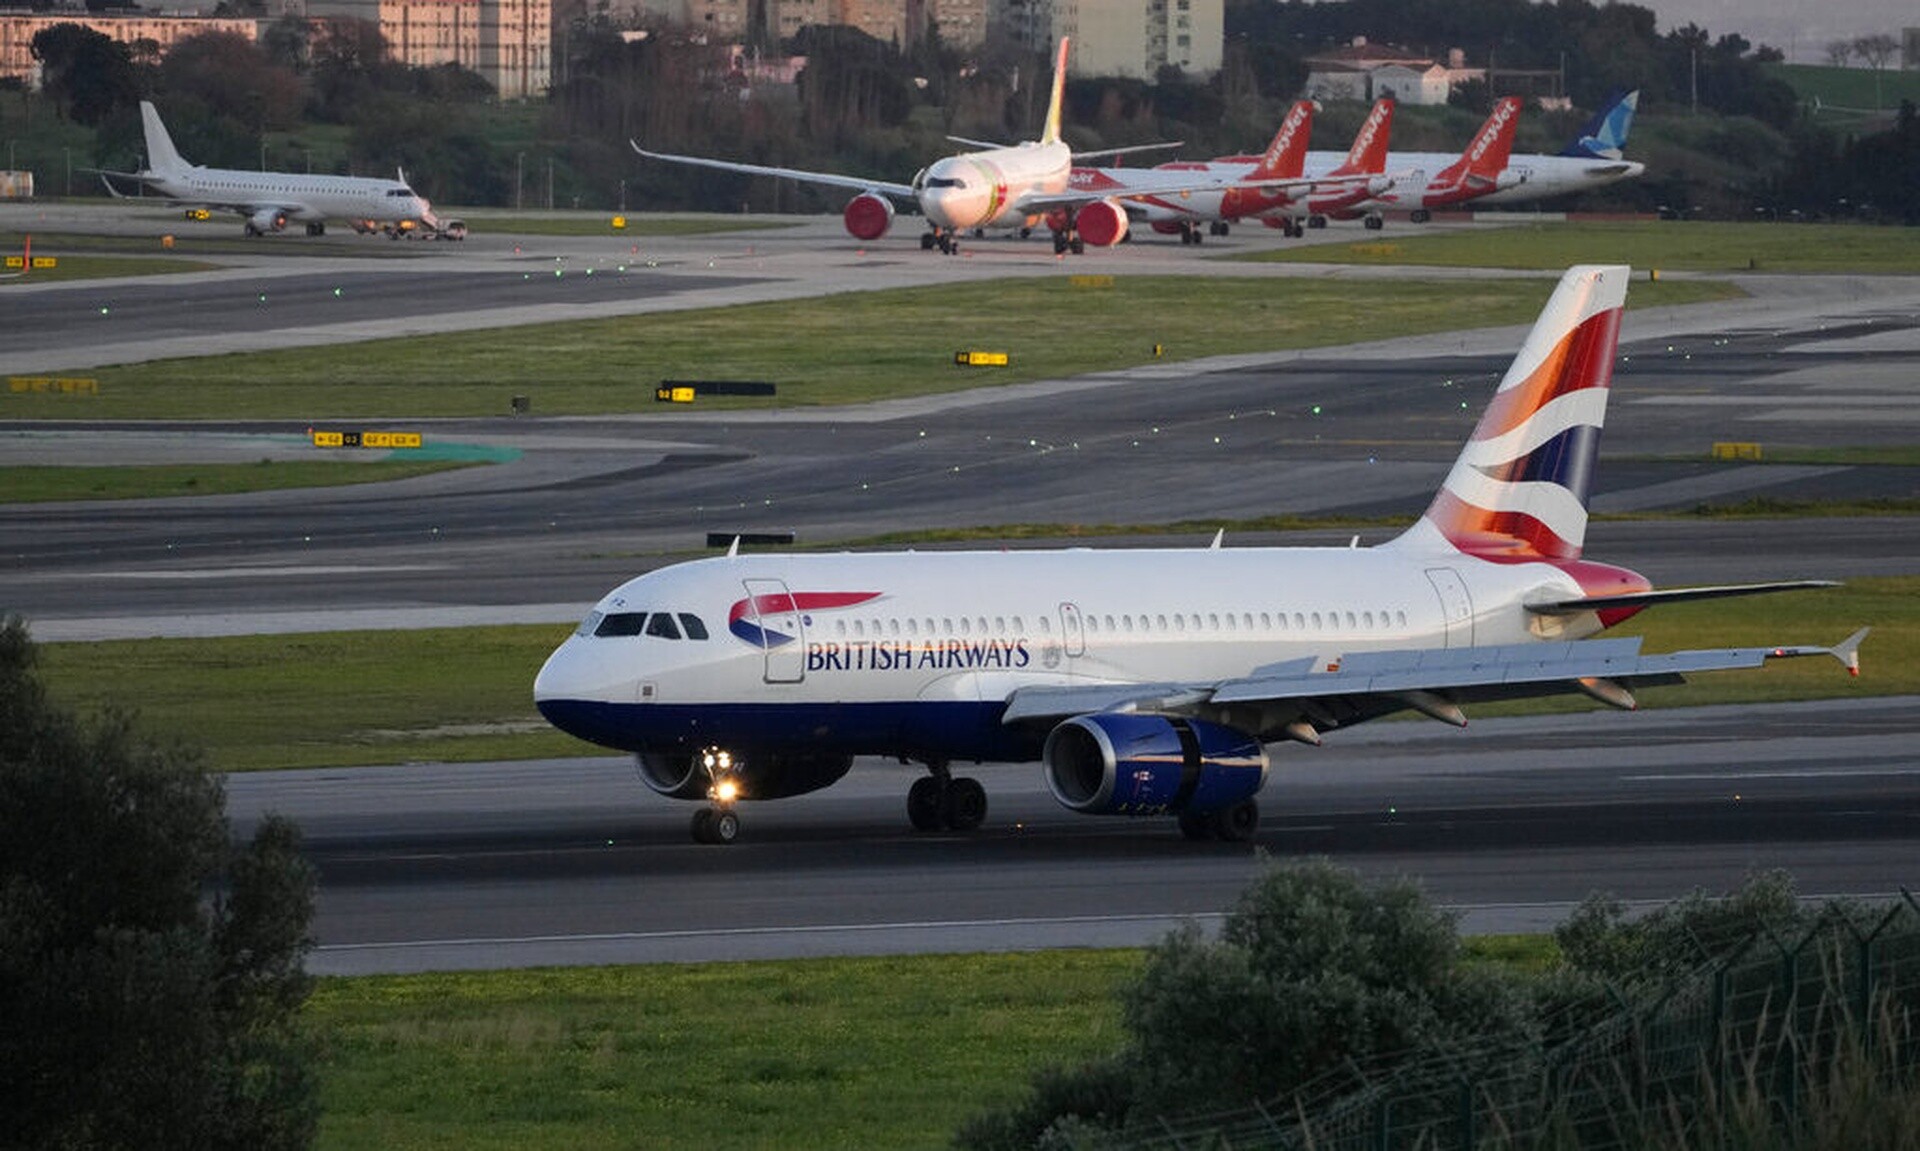 Παραλίγο τραγωδία σε πτήση της British Airways που εκτελούσε το Αθήνα - Λονδίνο - Drone πέρασε ξυστά